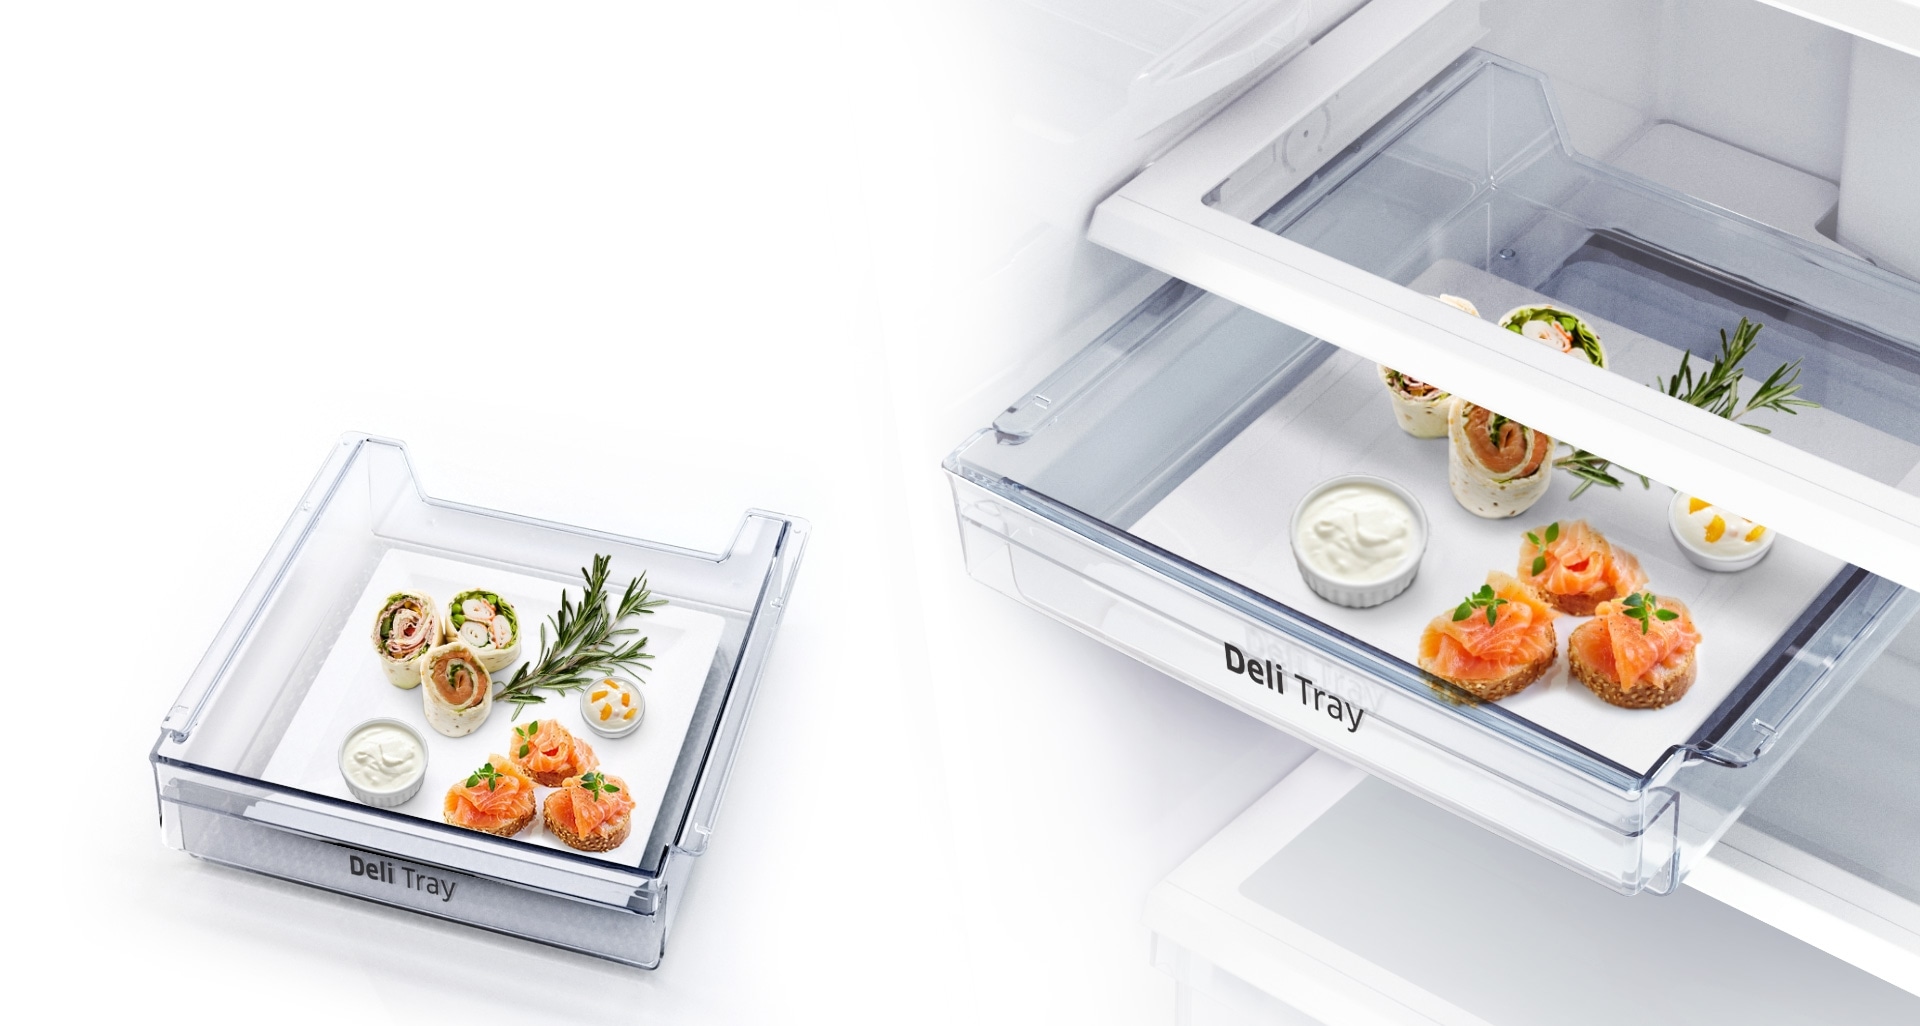 Le Deli Tray amovible se caractérise par un design compact qui utilise efficacement « l’espace perdu » à l’intérieur des réfrigérateurs. Ce plateau vous permet de ranger les aliments de choix ou que vous venez de préparer et de les servir directement à table.